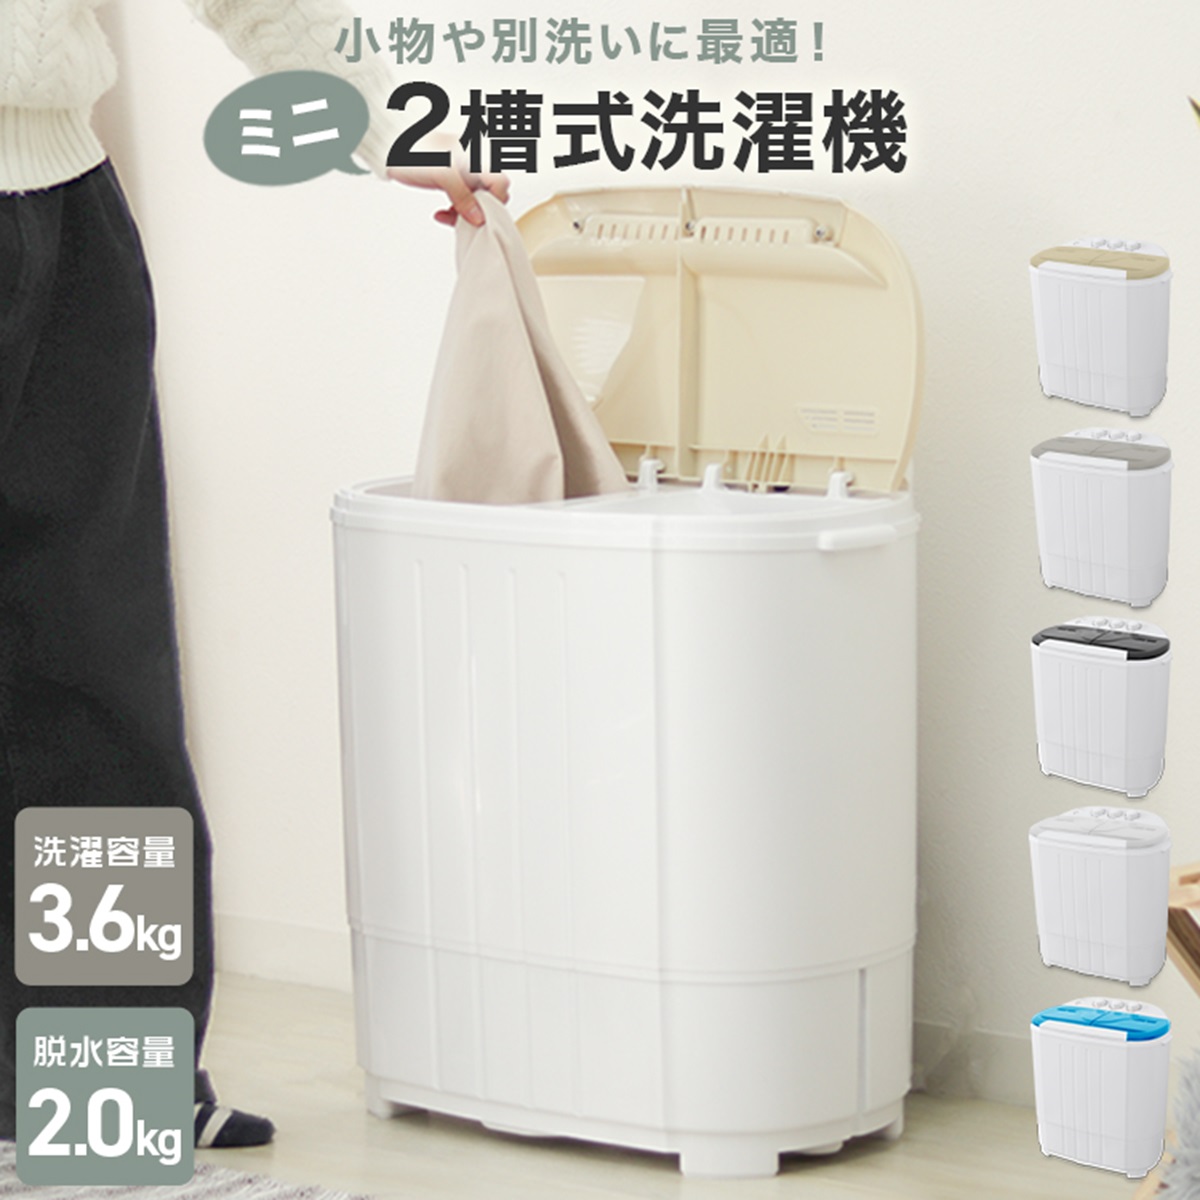 人気ブランド 洗濯機 小型 二槽式 縦型 一人暮らし 3.6kg コンパクト